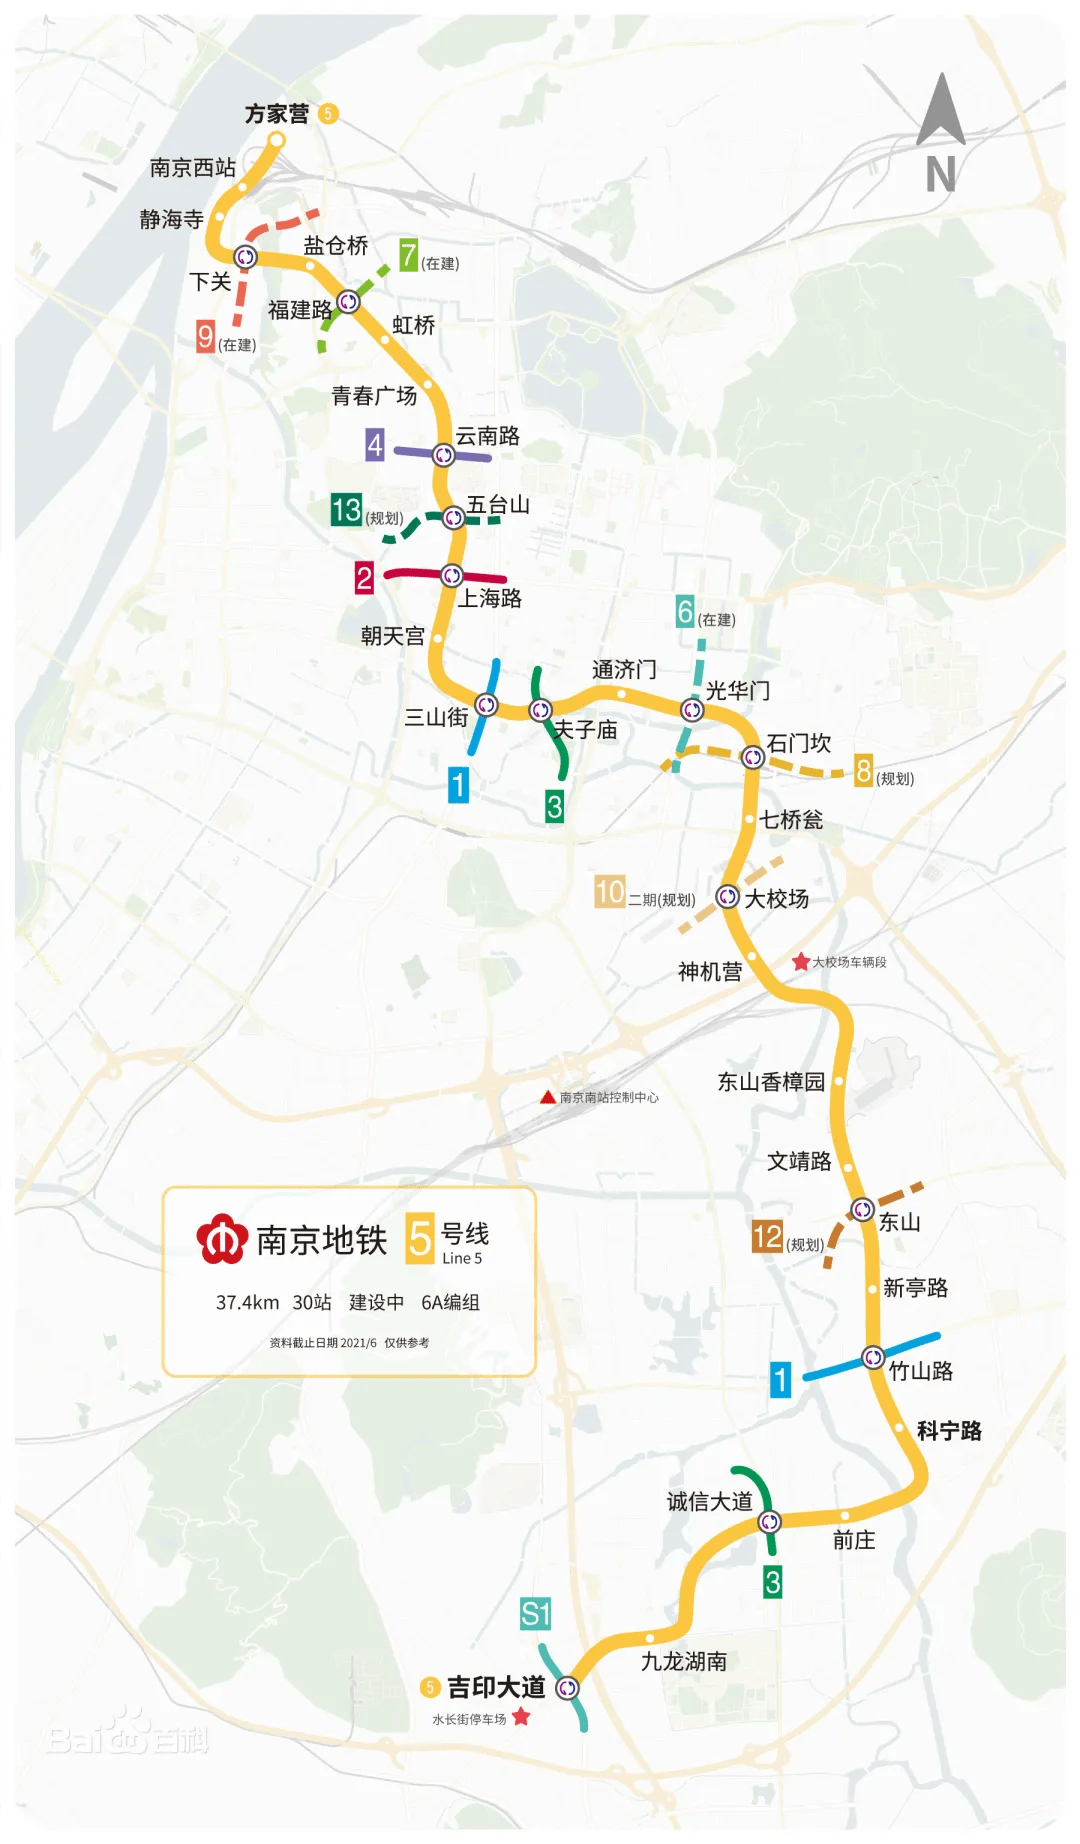 南京地铁13号线,来了!_线路